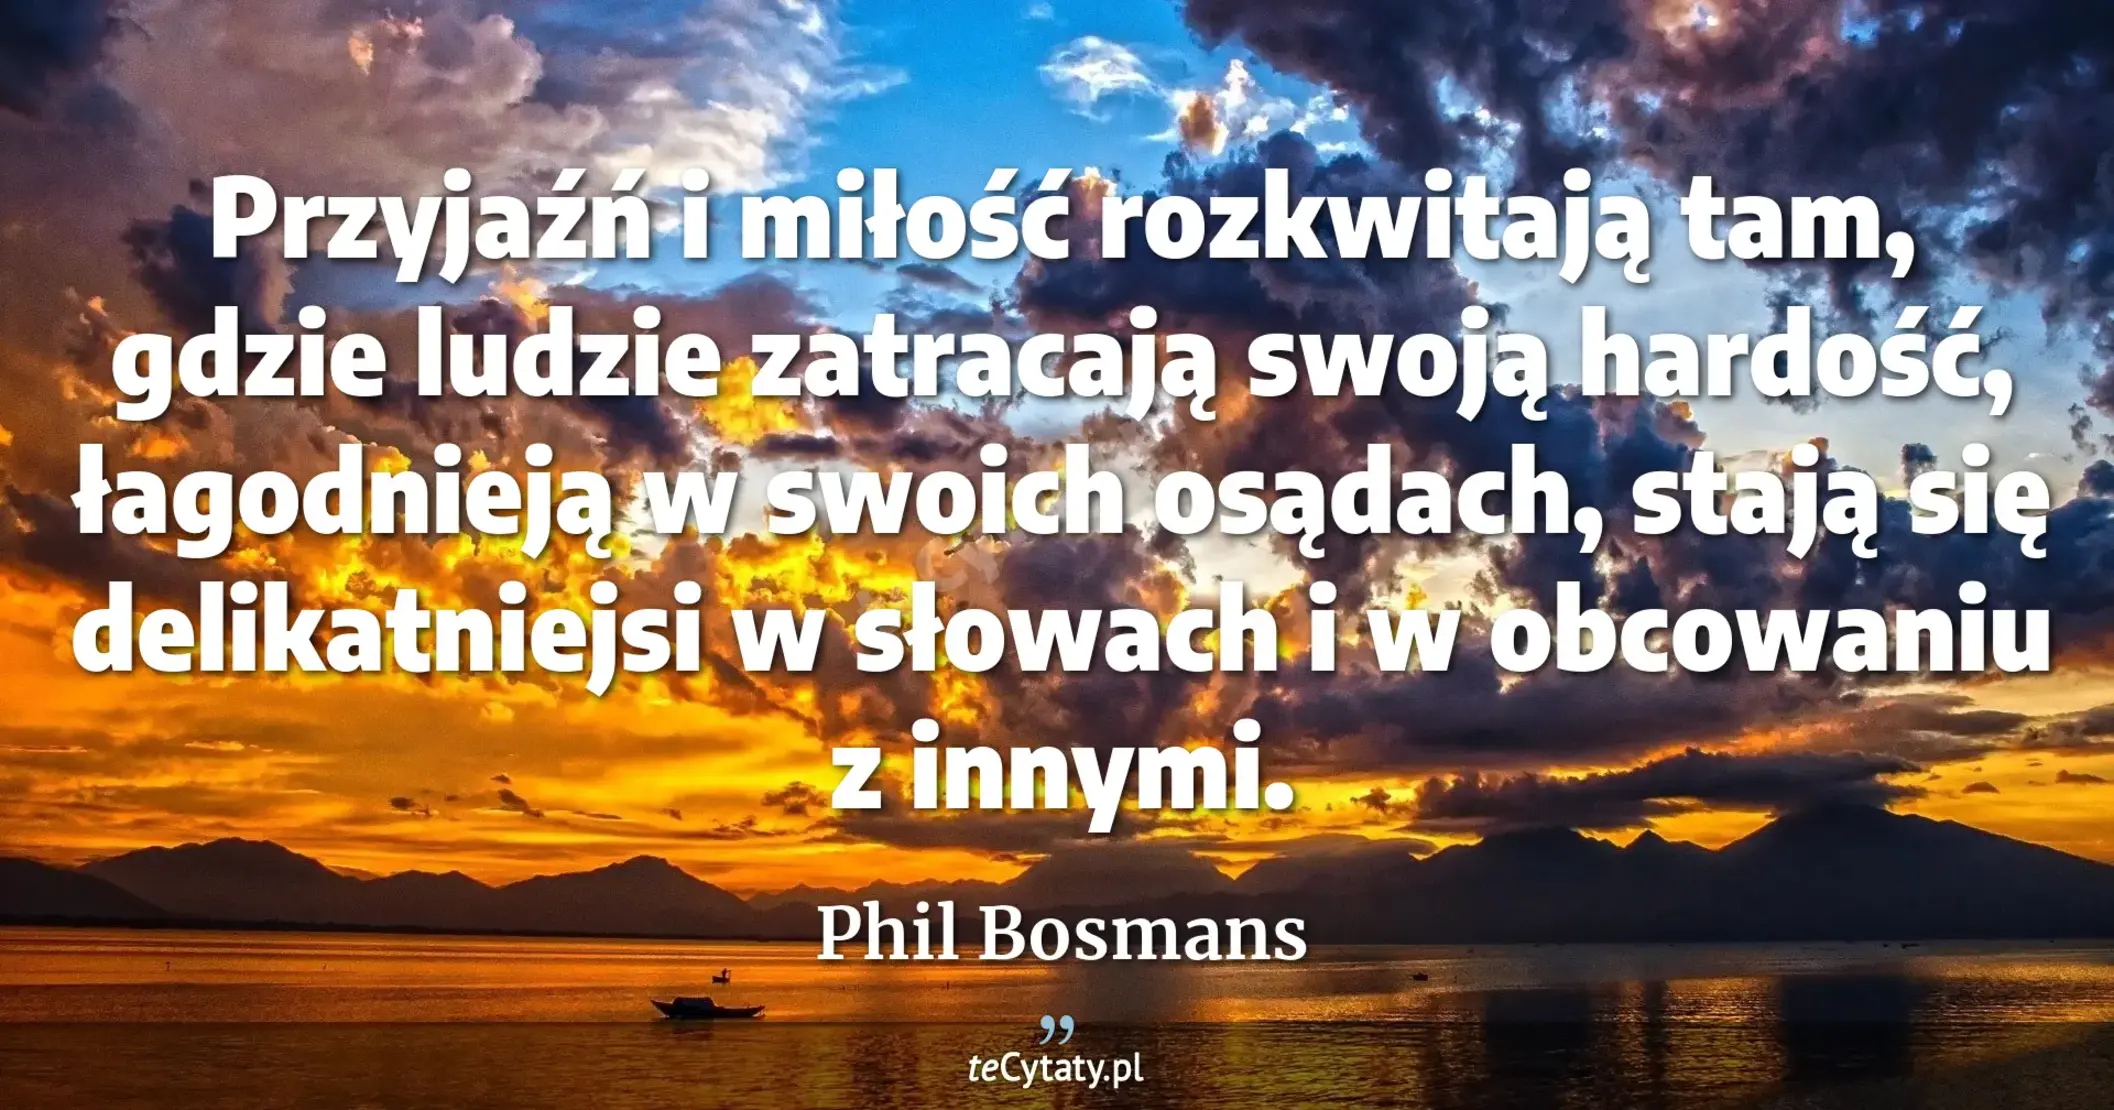 Przyjaźń i miłość rozkwitają tam, gdzie ludzie zatracają swoją hardość, łagodnieją w swoich osądach, stają się delikatniejsi w słowach i w obcowaniu z innymi. - Phil Bosmans